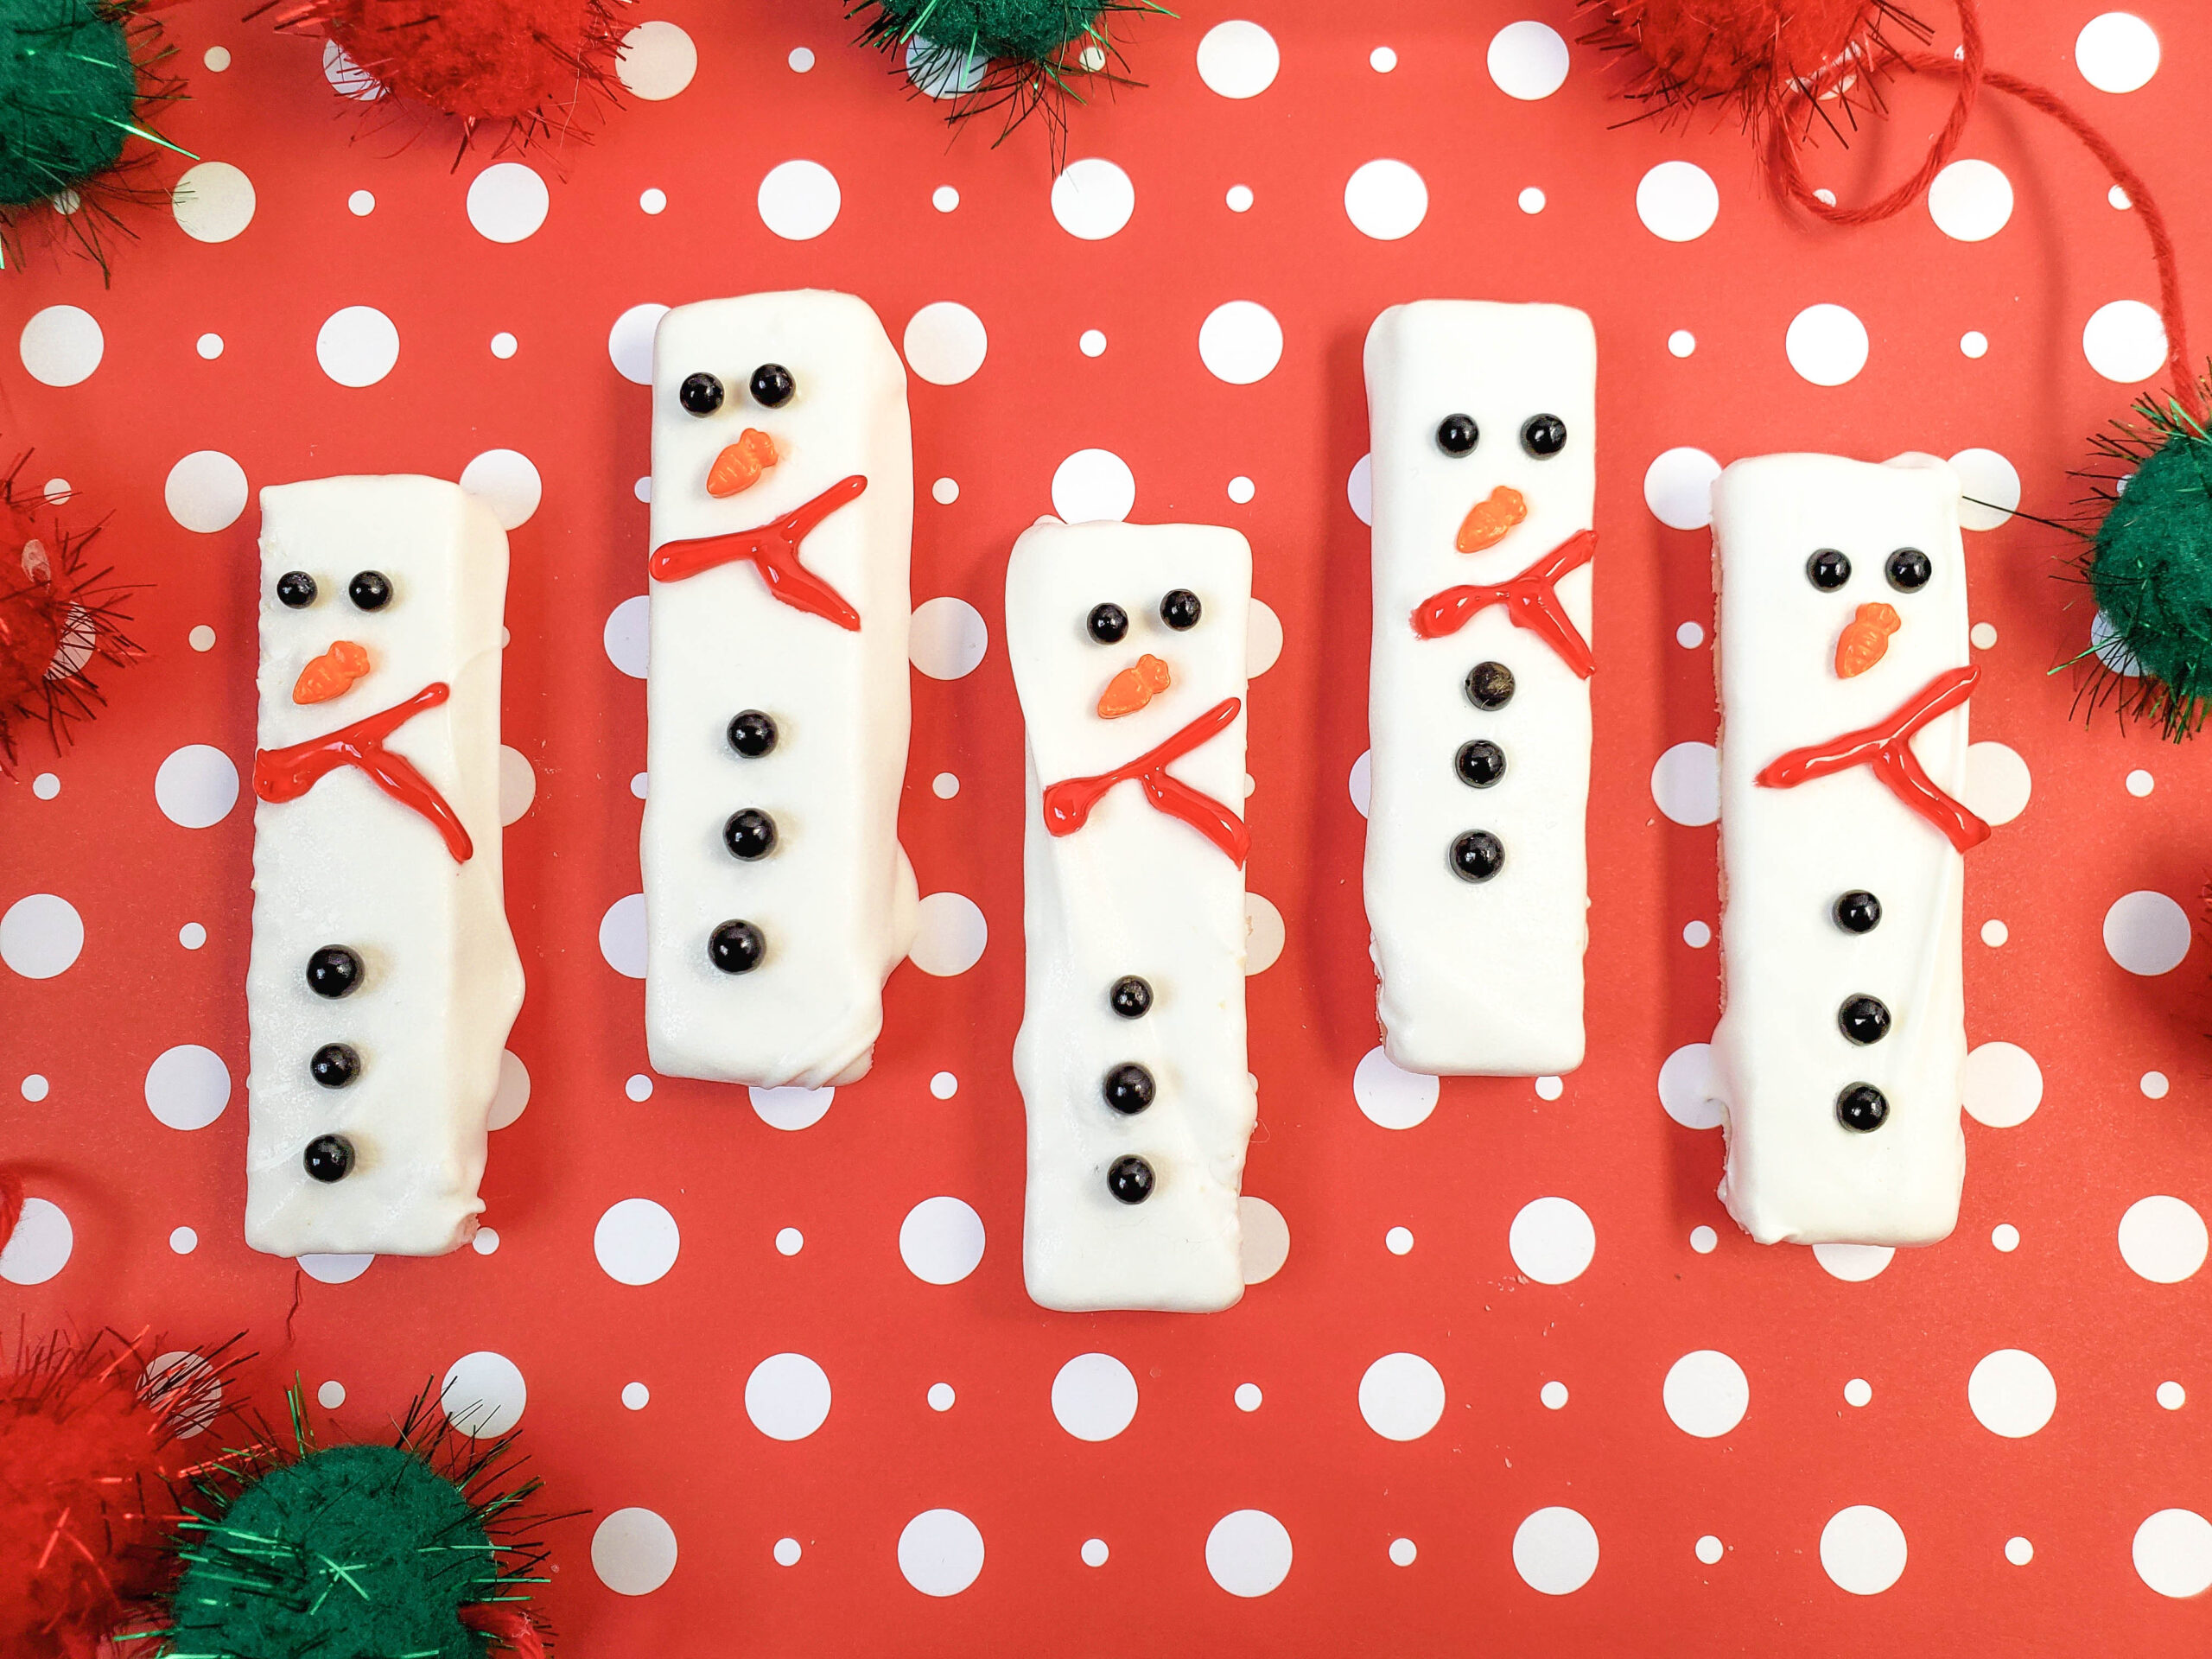 easy snowman cookies